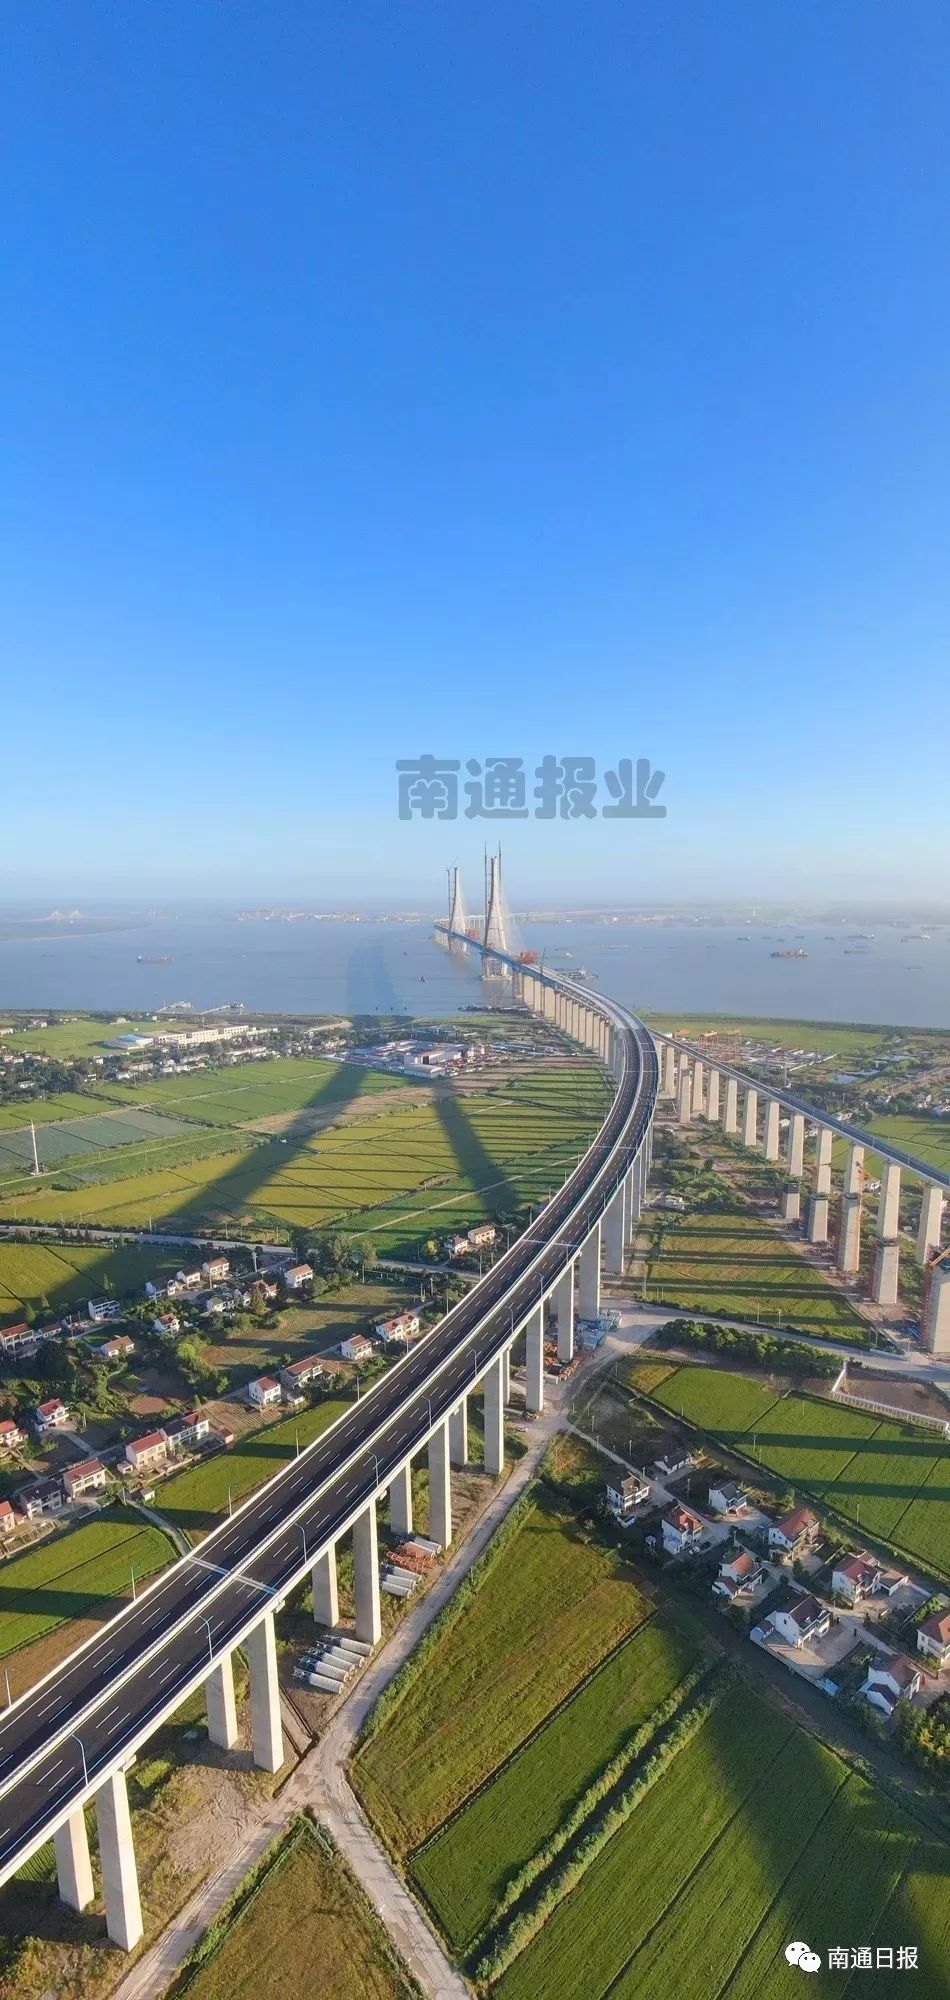 沪通长江大桥下层铁路桥开始铺轨,包含沪通铁路,盐通高铁